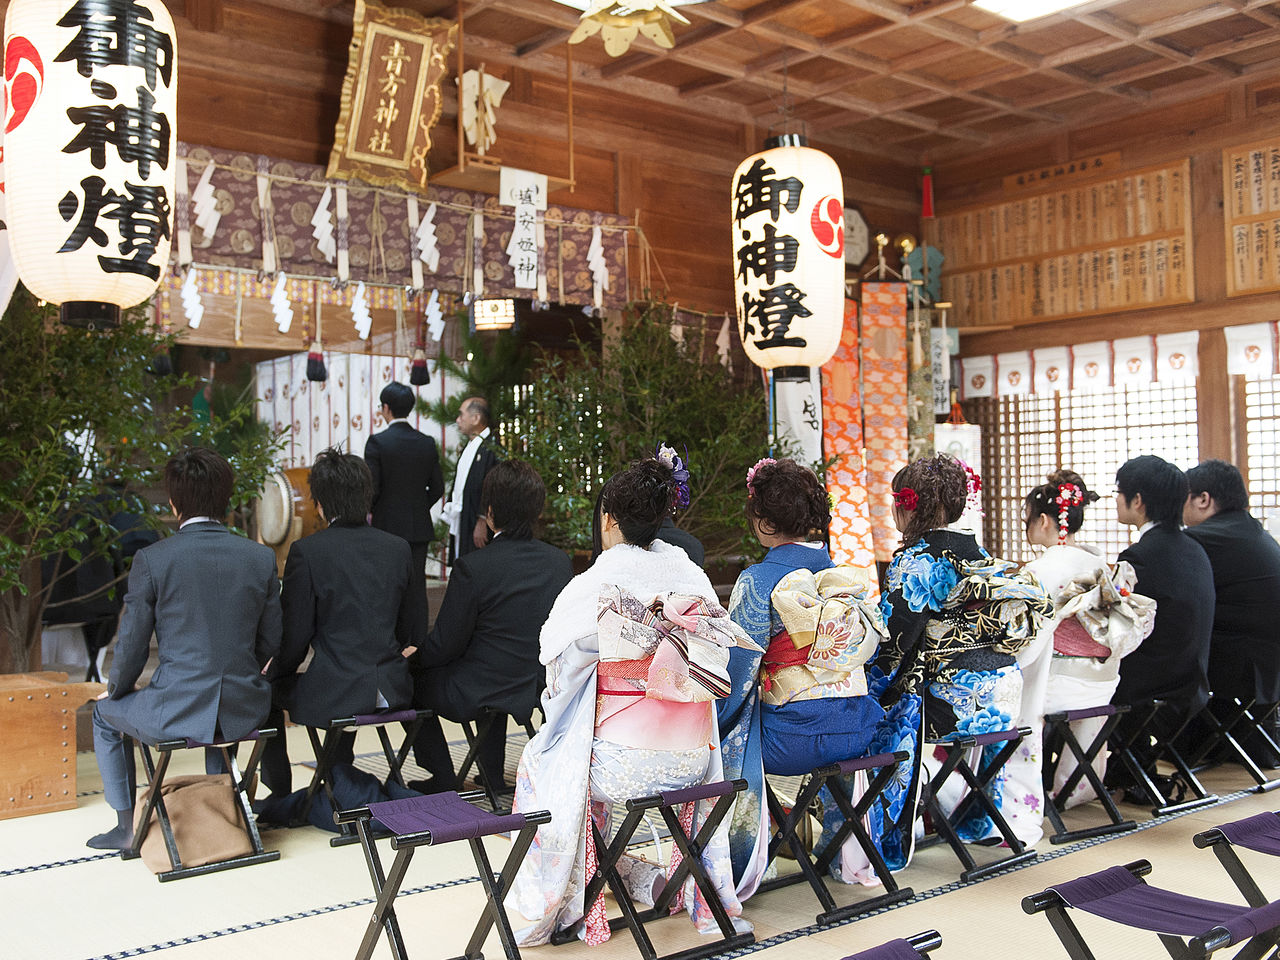 Les jeunes se tiennent de leur mieux pour la cérémonie traditionnelle de passage à l’âge adulte, le Seijin-shiki